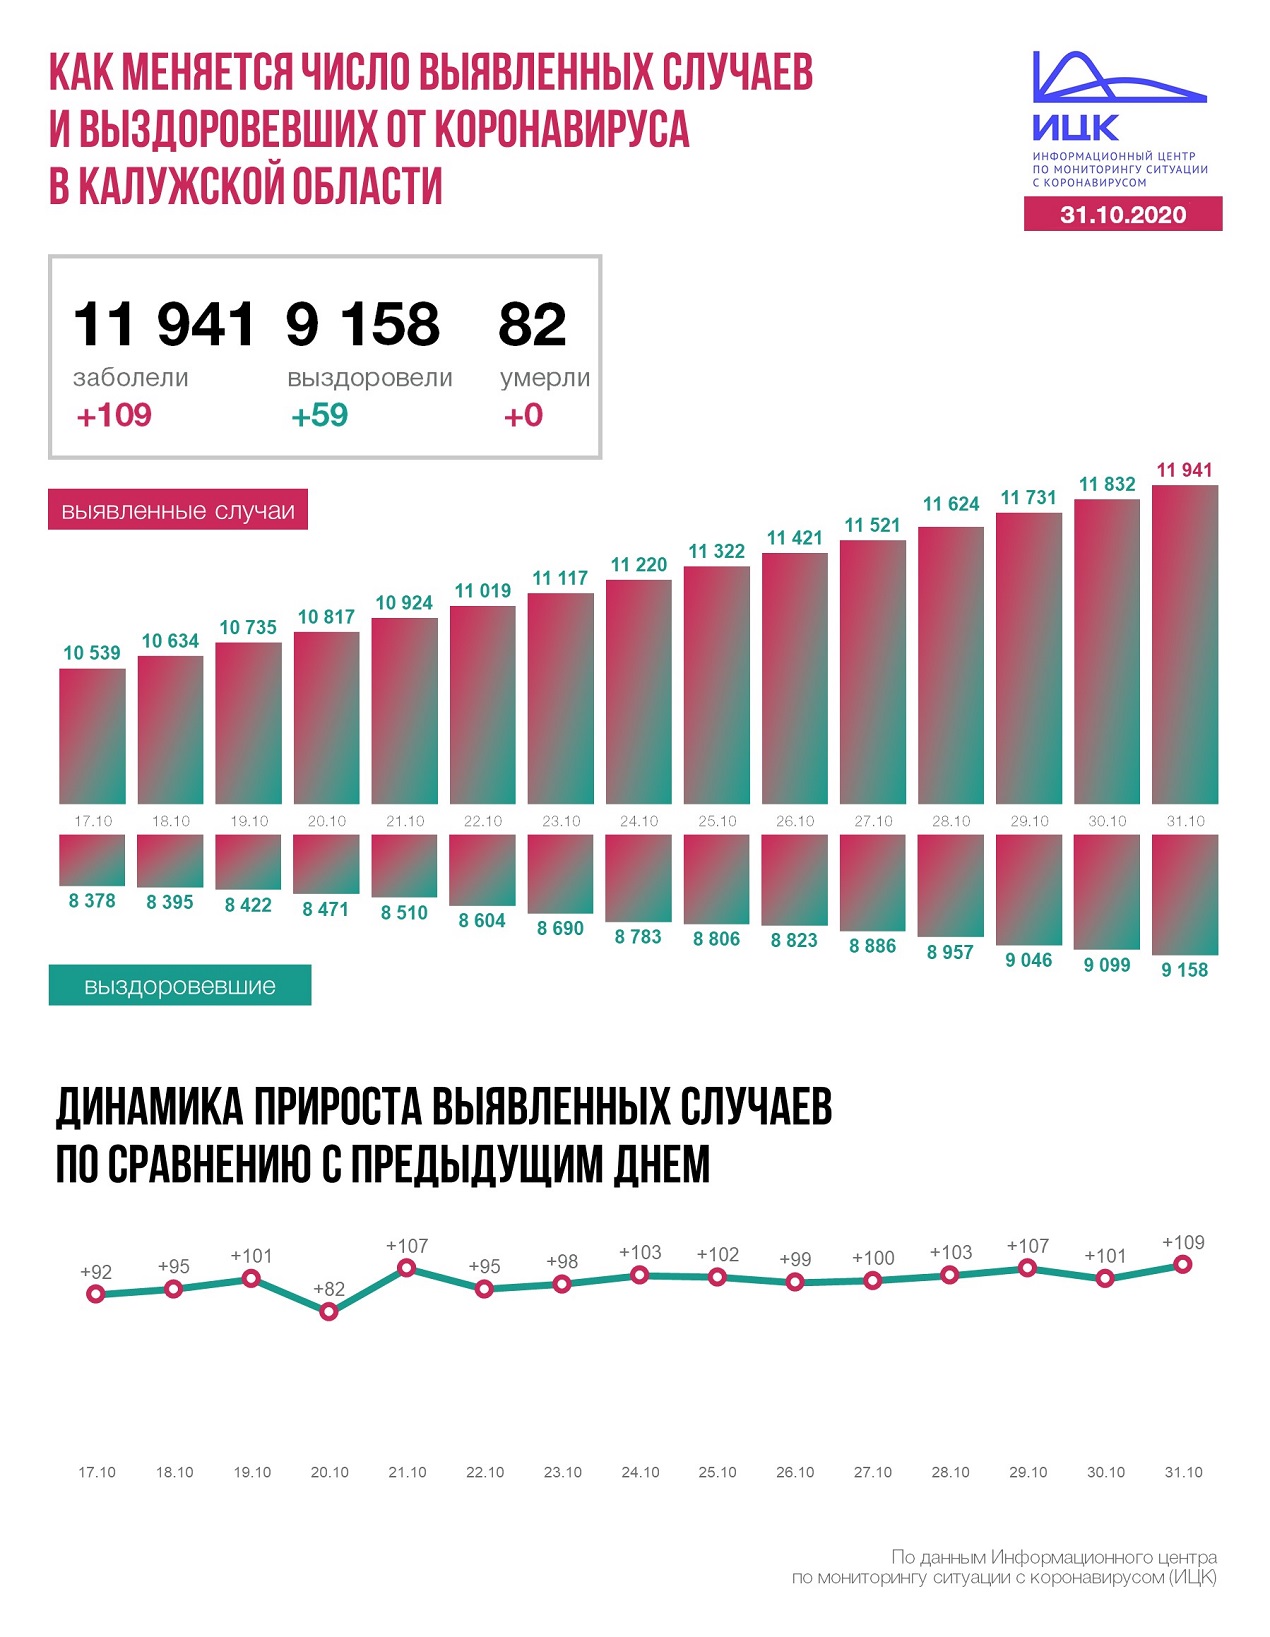 Официальные данные федерального оперативного штаба по коронавирусу в Калужской области на 31 октября 2020 года.